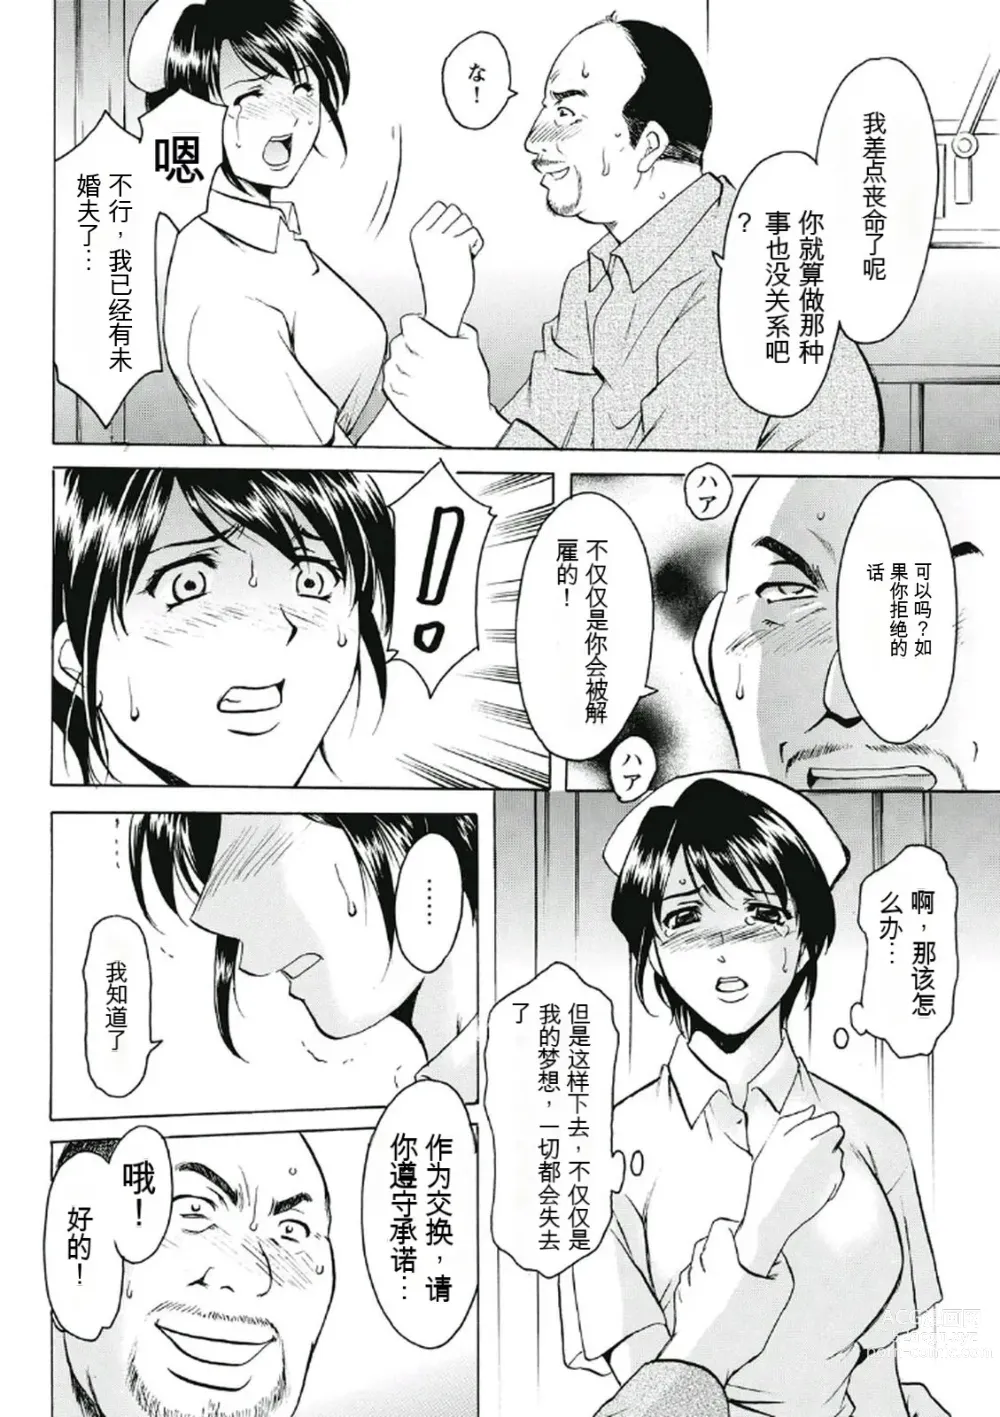 Page 12 of manga Chijoku Byoutou -Hakui no Datenshi-